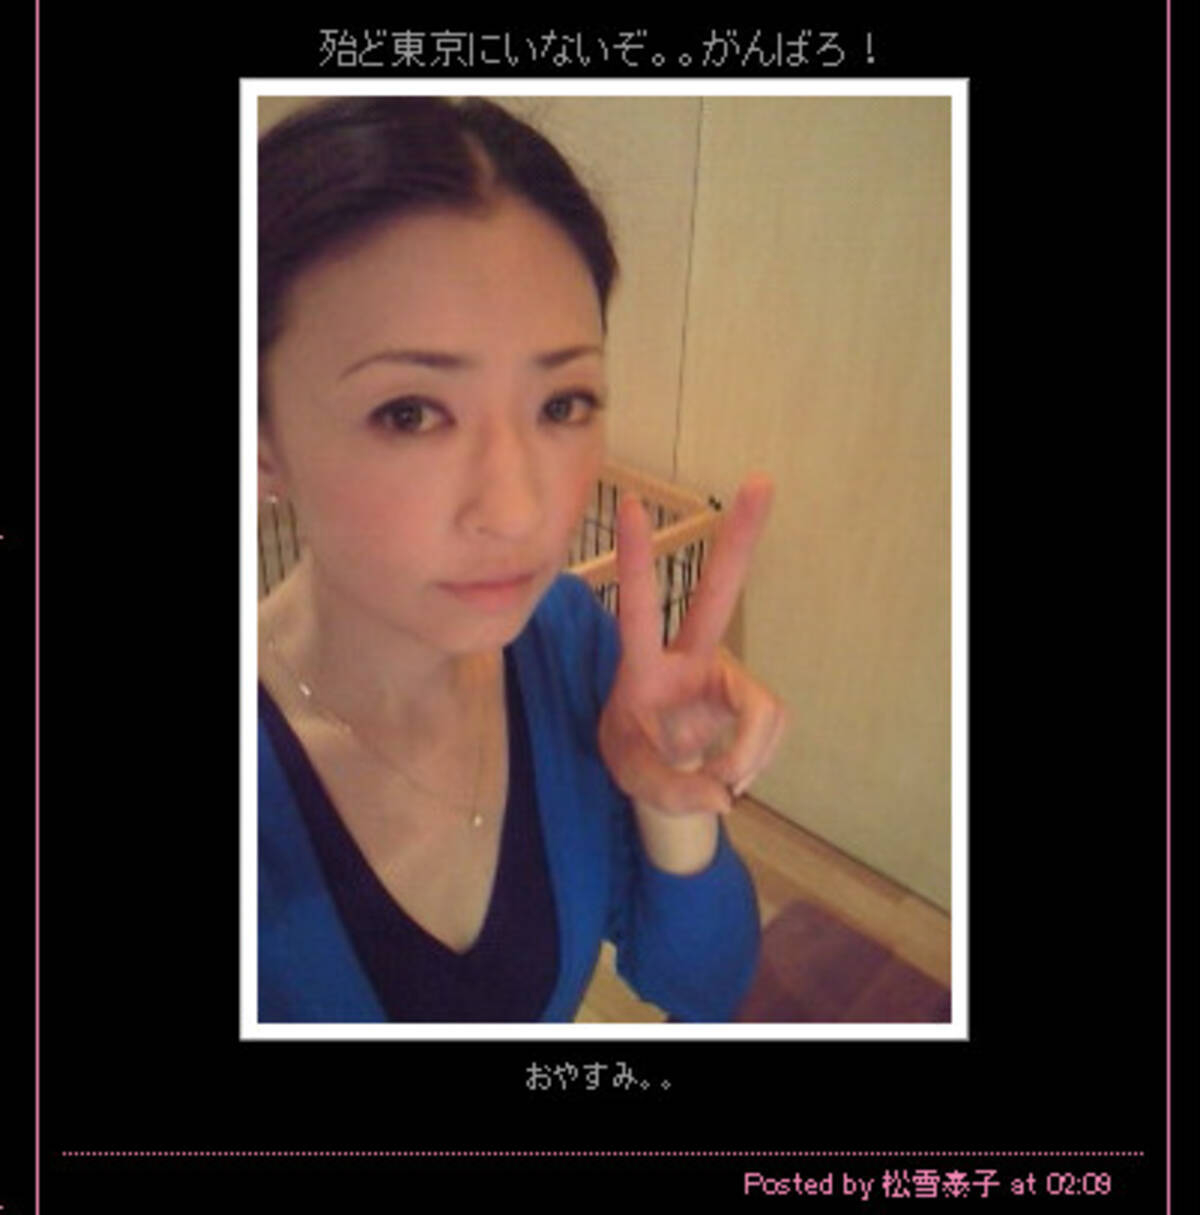 エロス に挑戦した松雪泰子さん 39歳 が美しすぎて困る 12年1月28日 エキサイトニュース